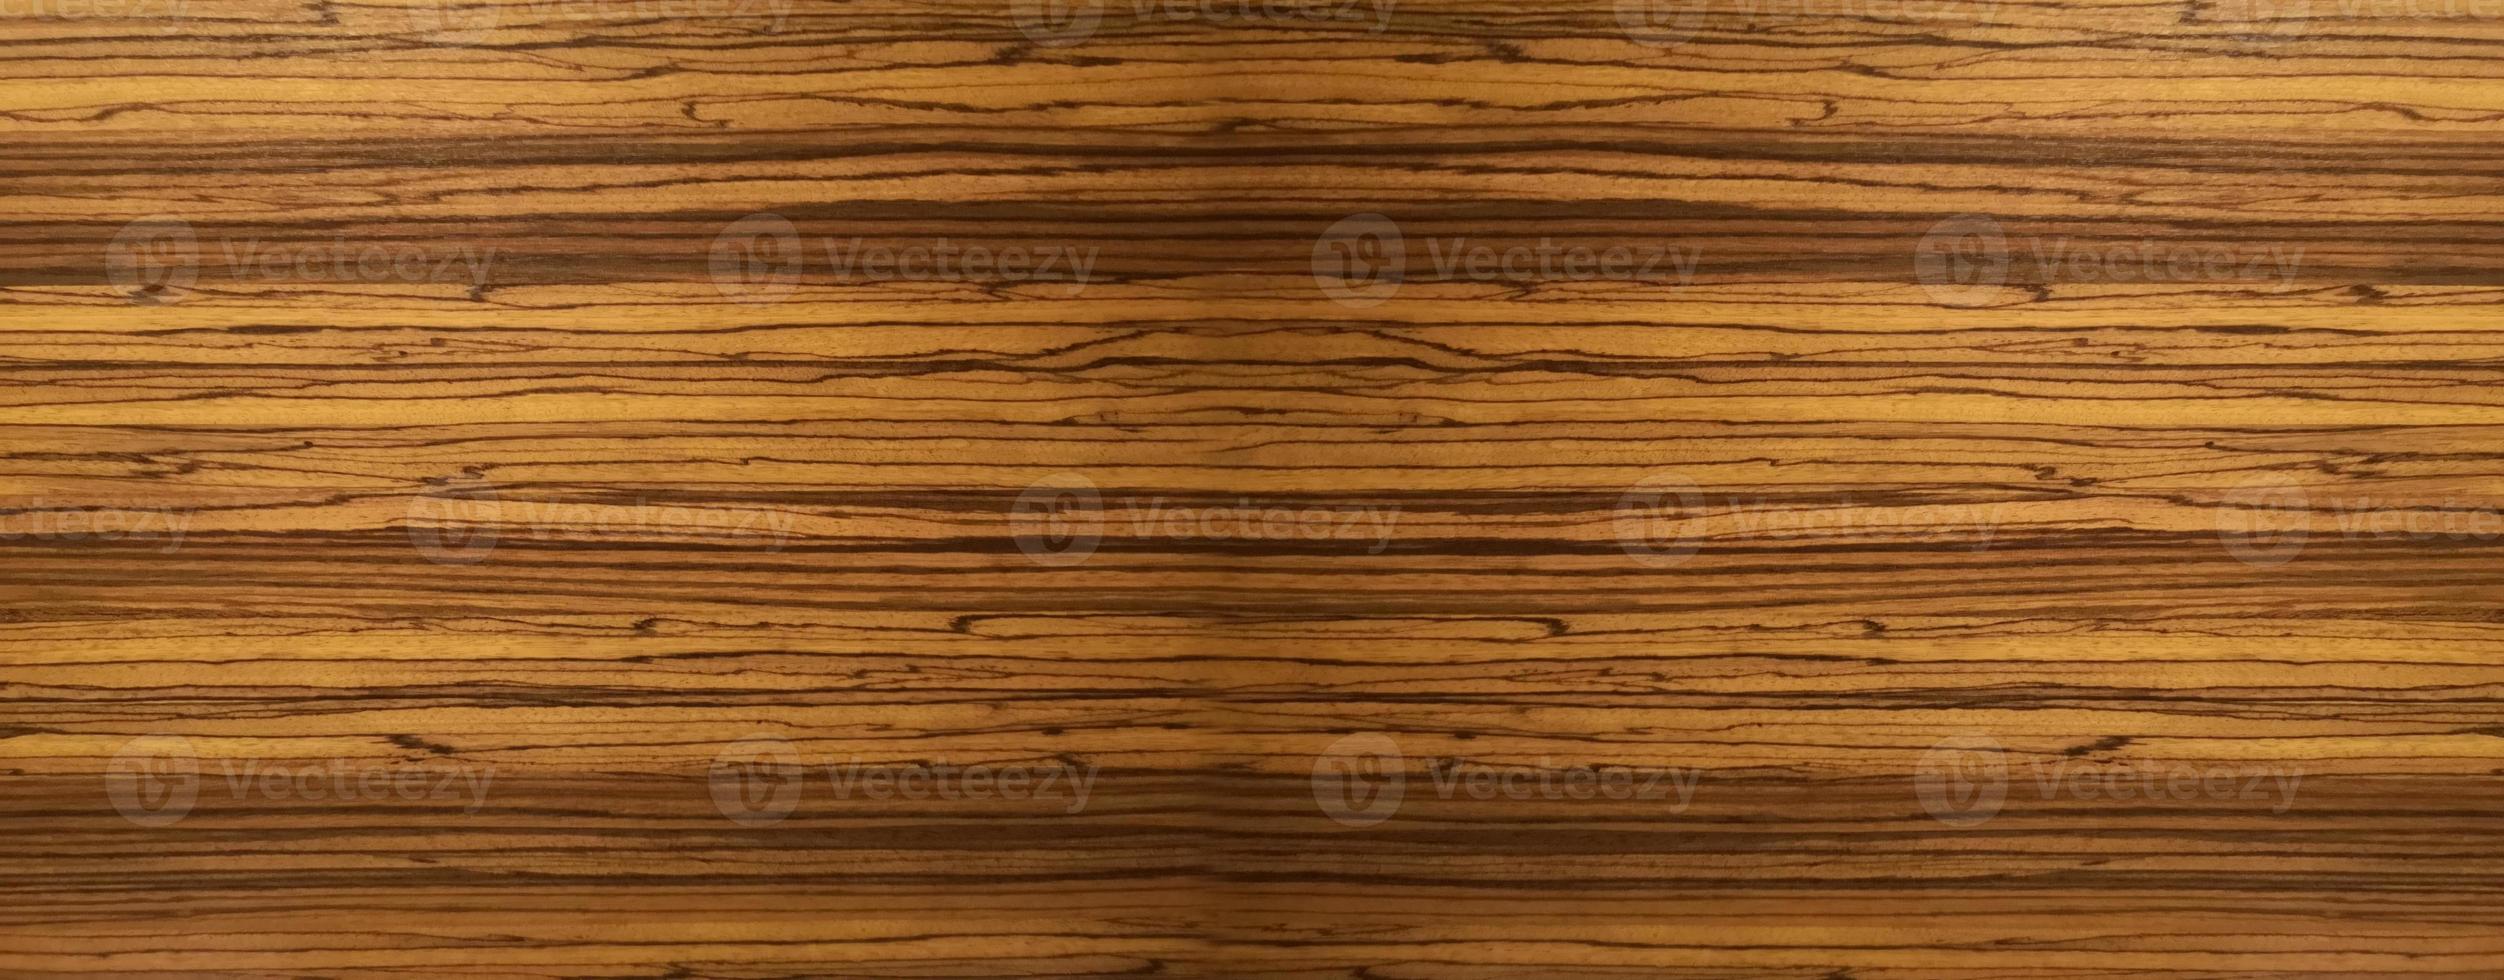 matériau de mur en bois de couleur marron foncé texture de surface de bavure sur fond noir motif abstrait en bois, scène de vue de dessus photo